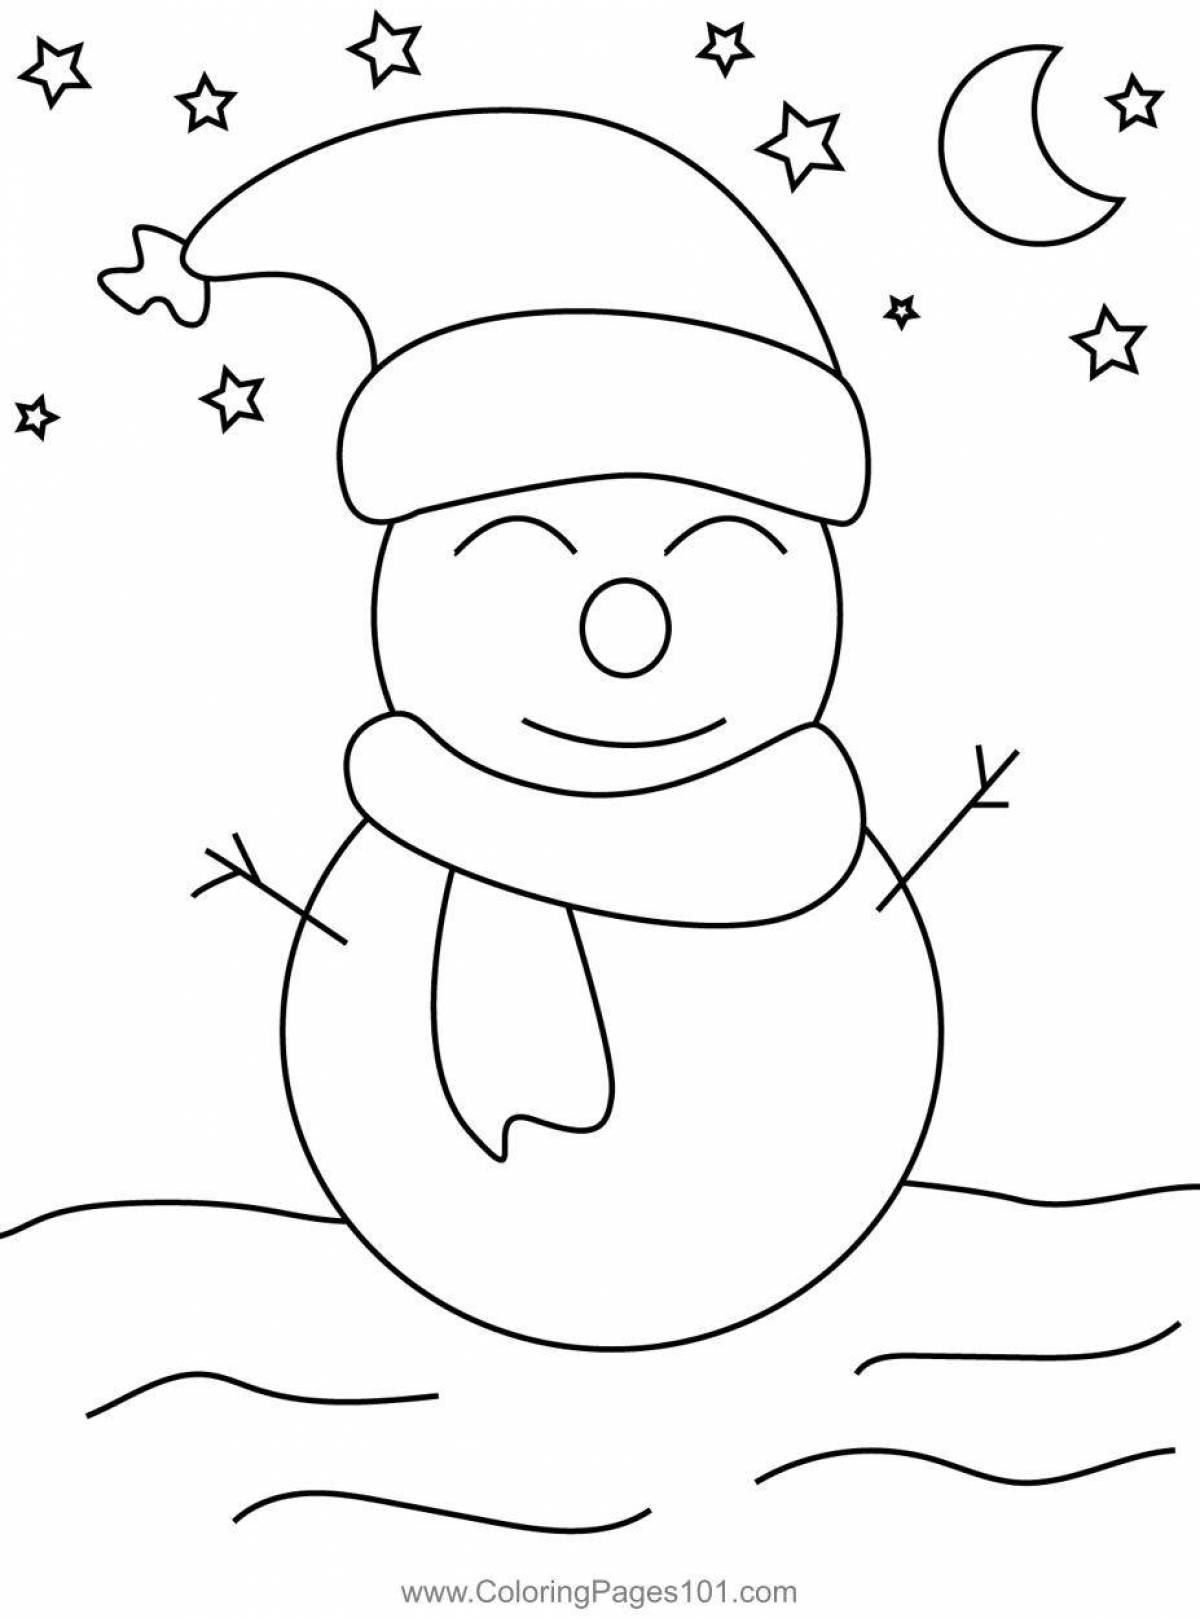 Яркая раскраска симпатичный снеговик